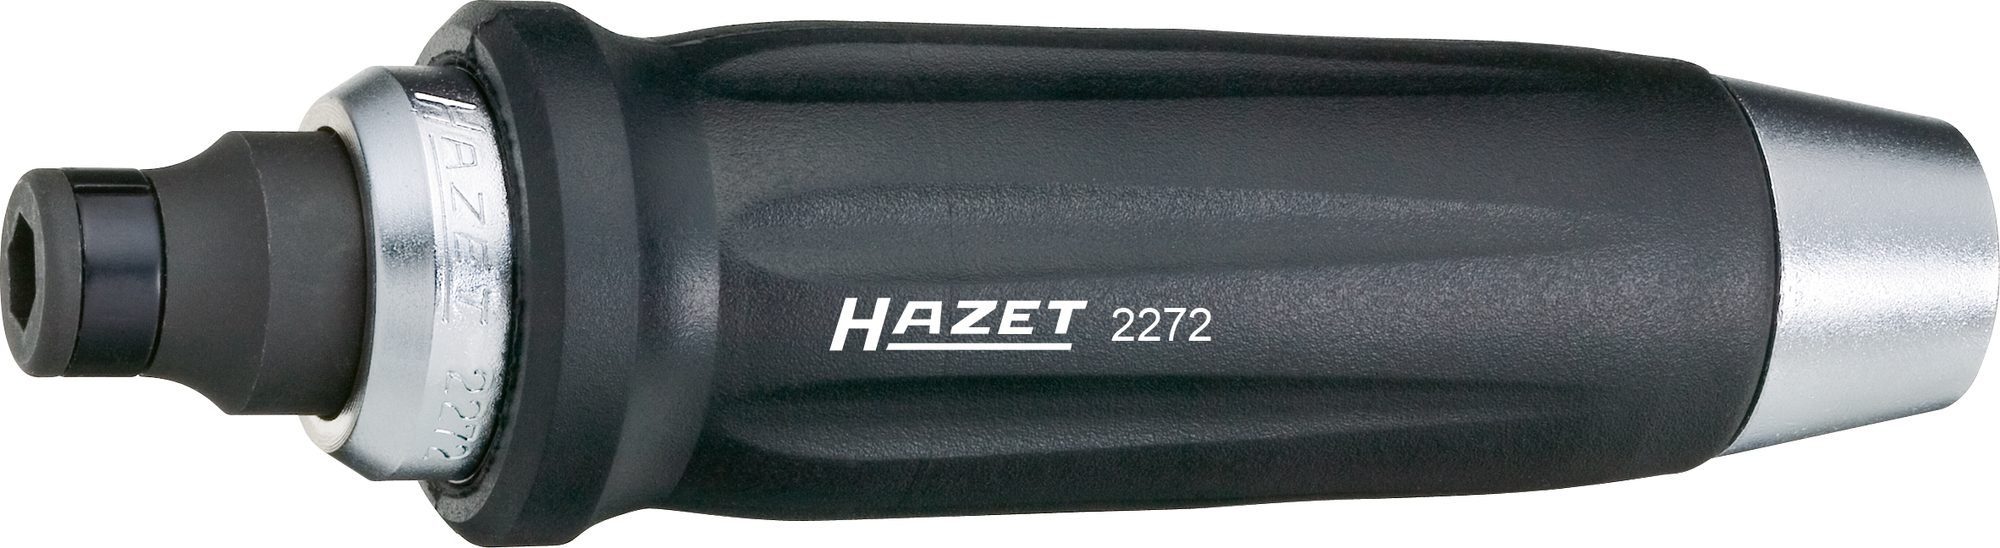 HAZET Bit-Set Hazet Schlagschraubendreher, 2272